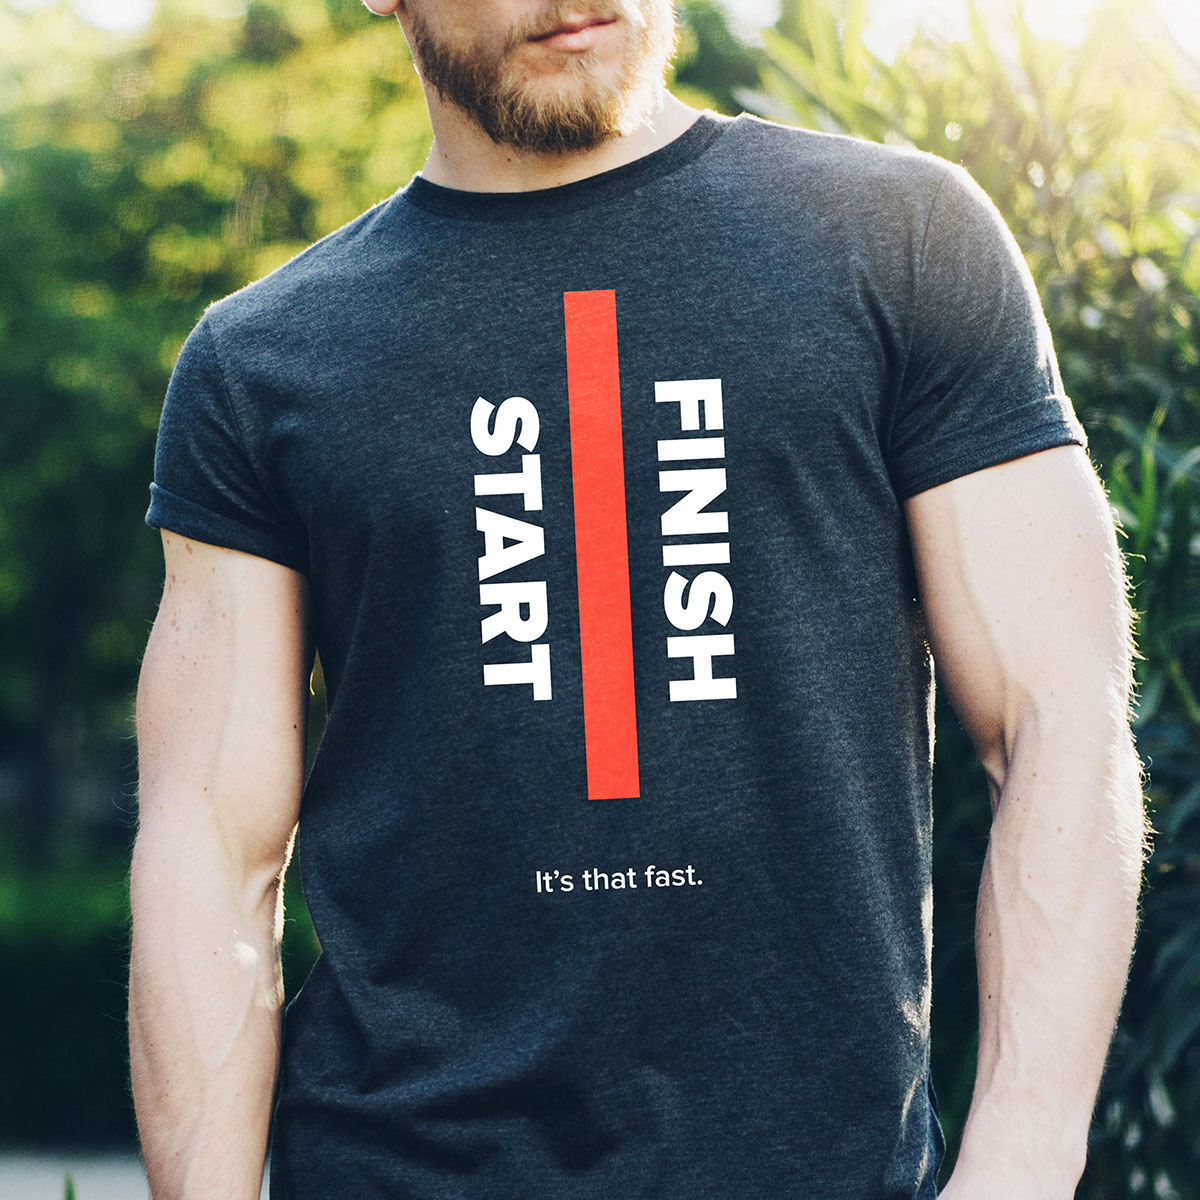 Koverse T-Shirt Design